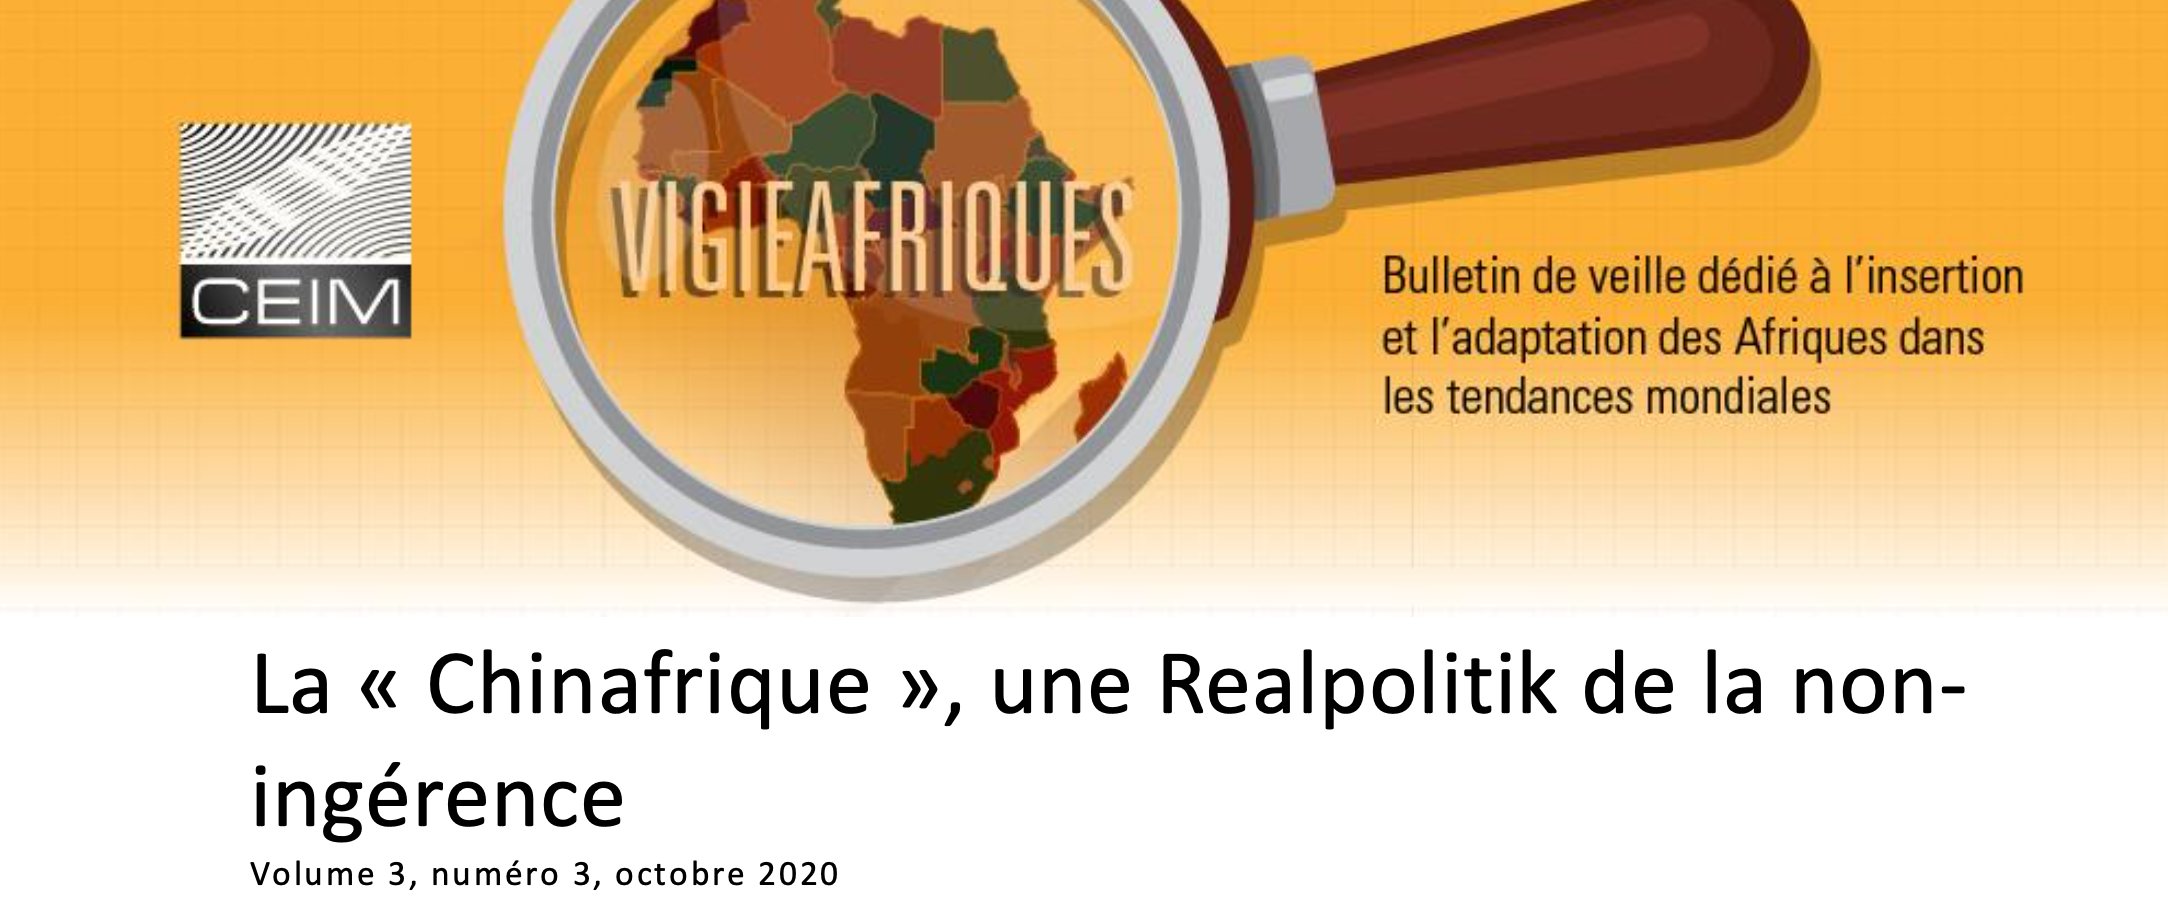 La « Chinafrique », une Realpolitik de la noningérence